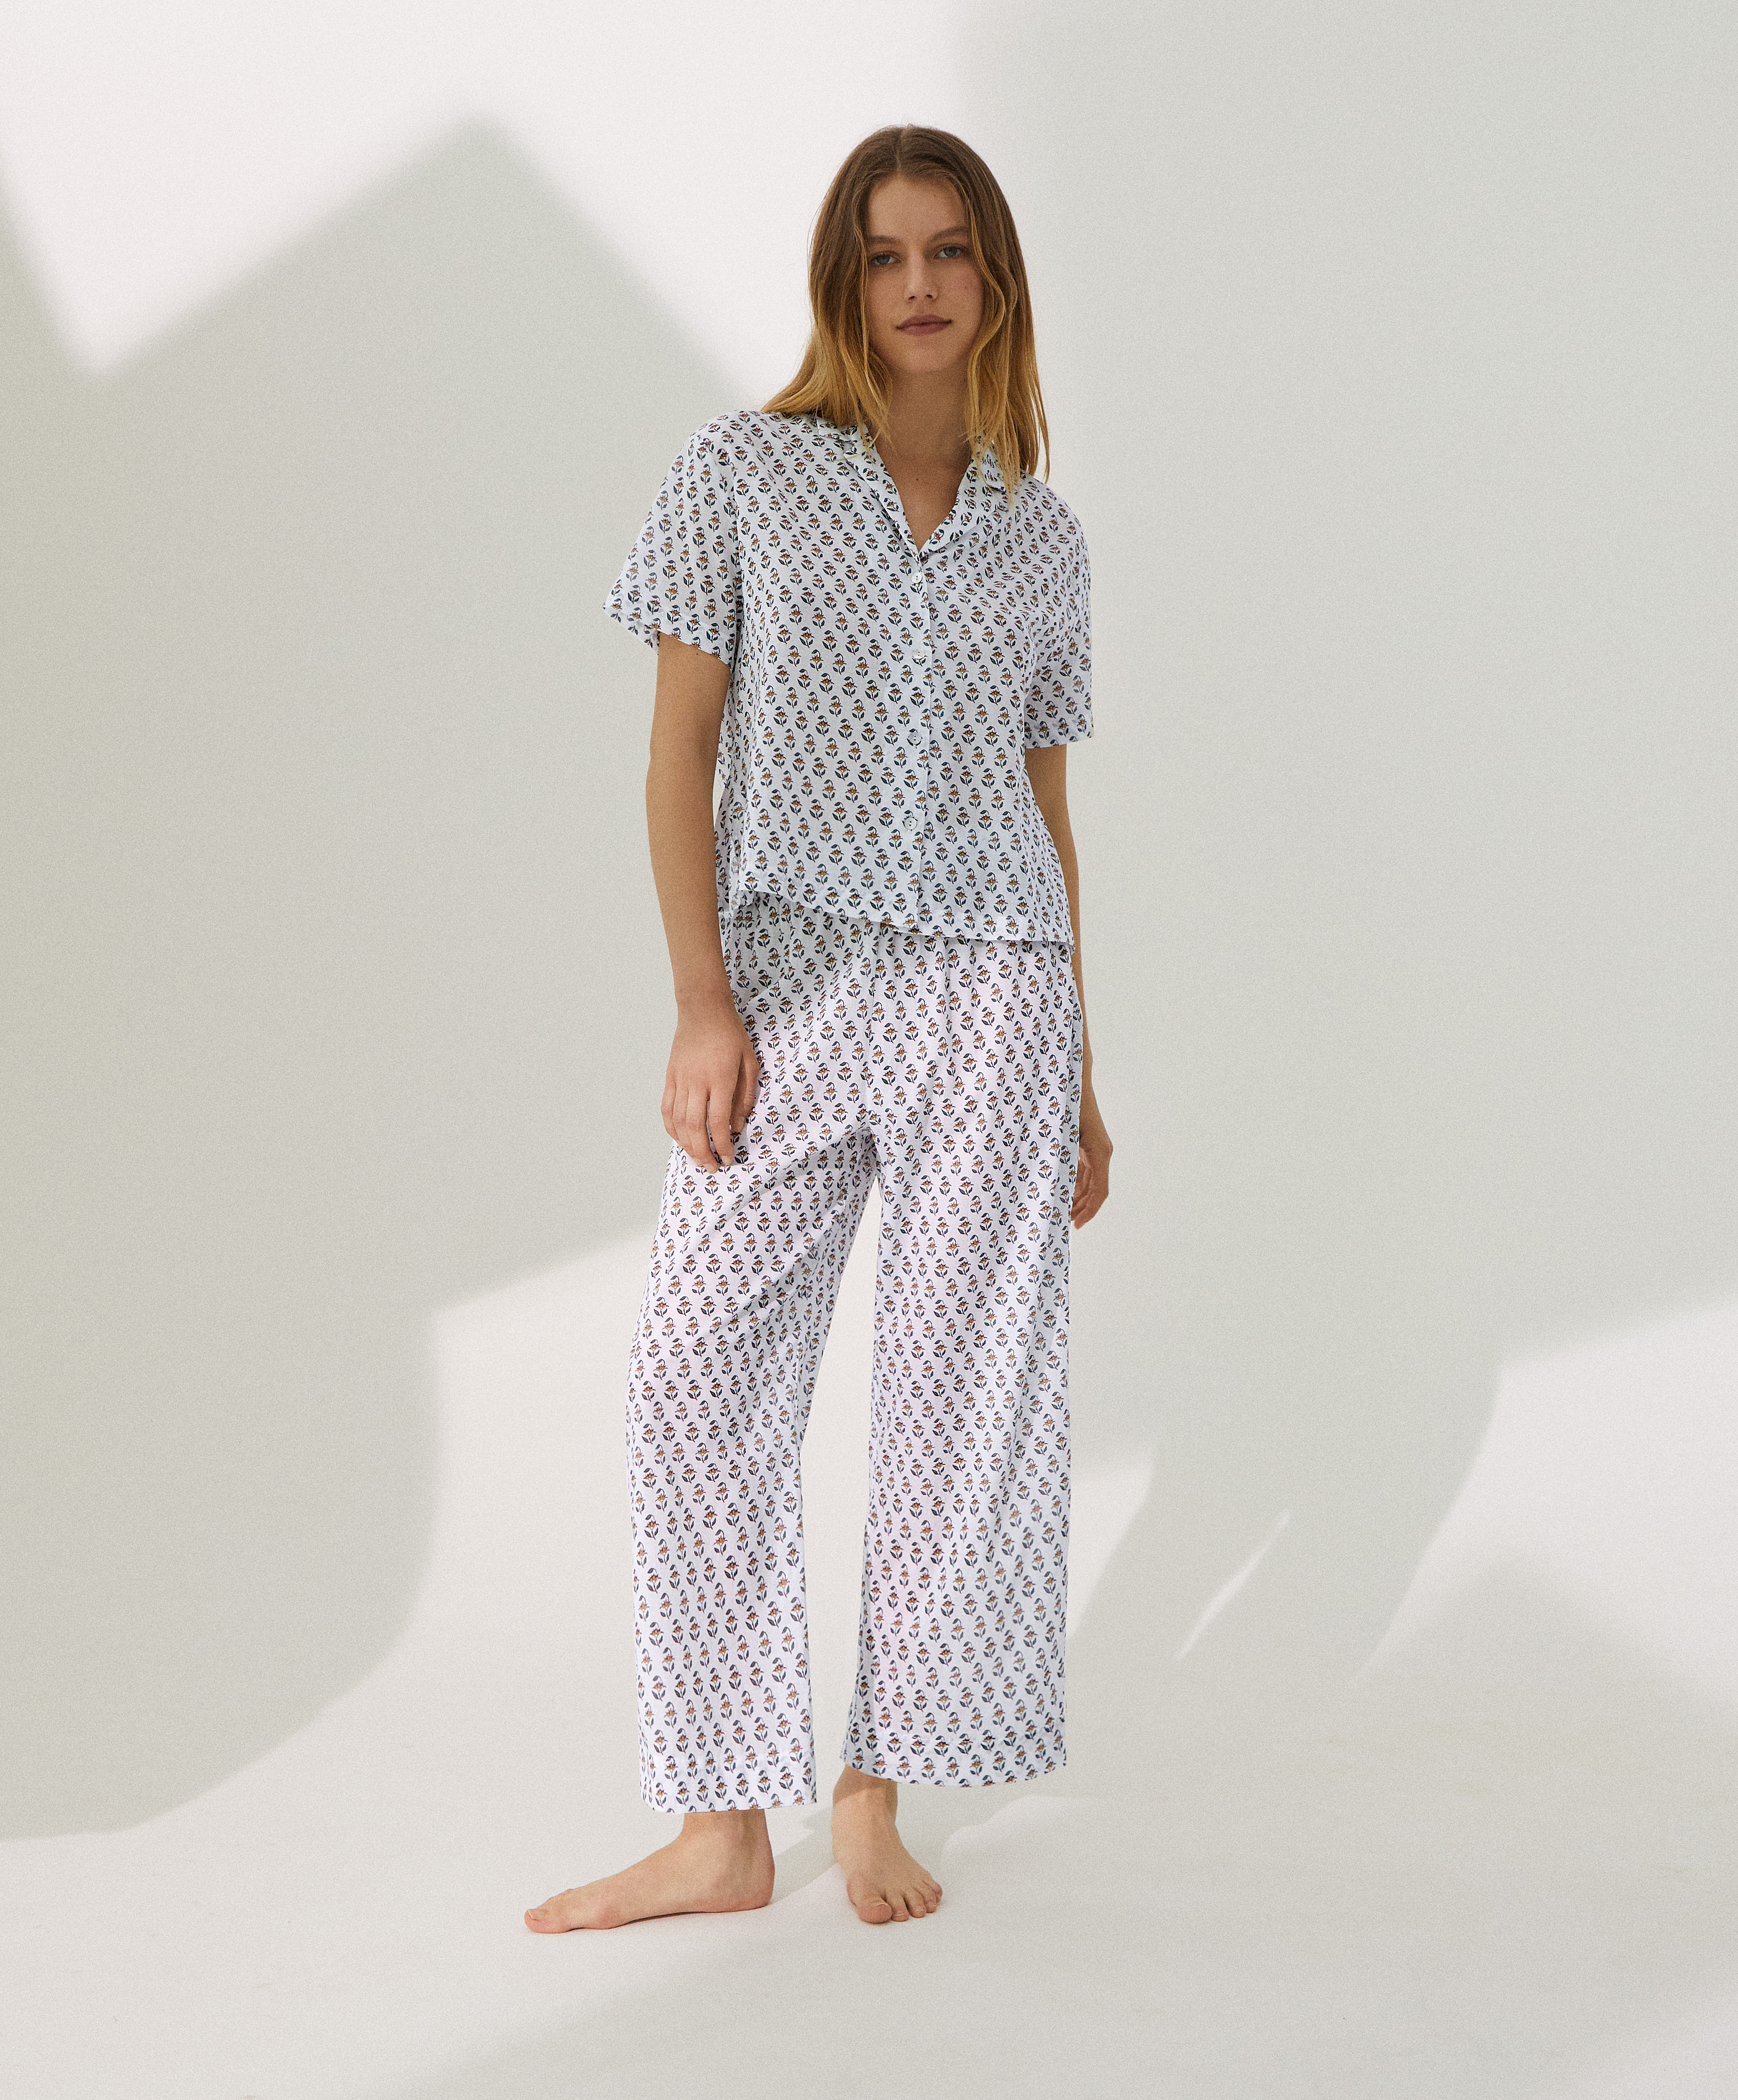 Completo pigiama stile camicia lunga 100% cotone